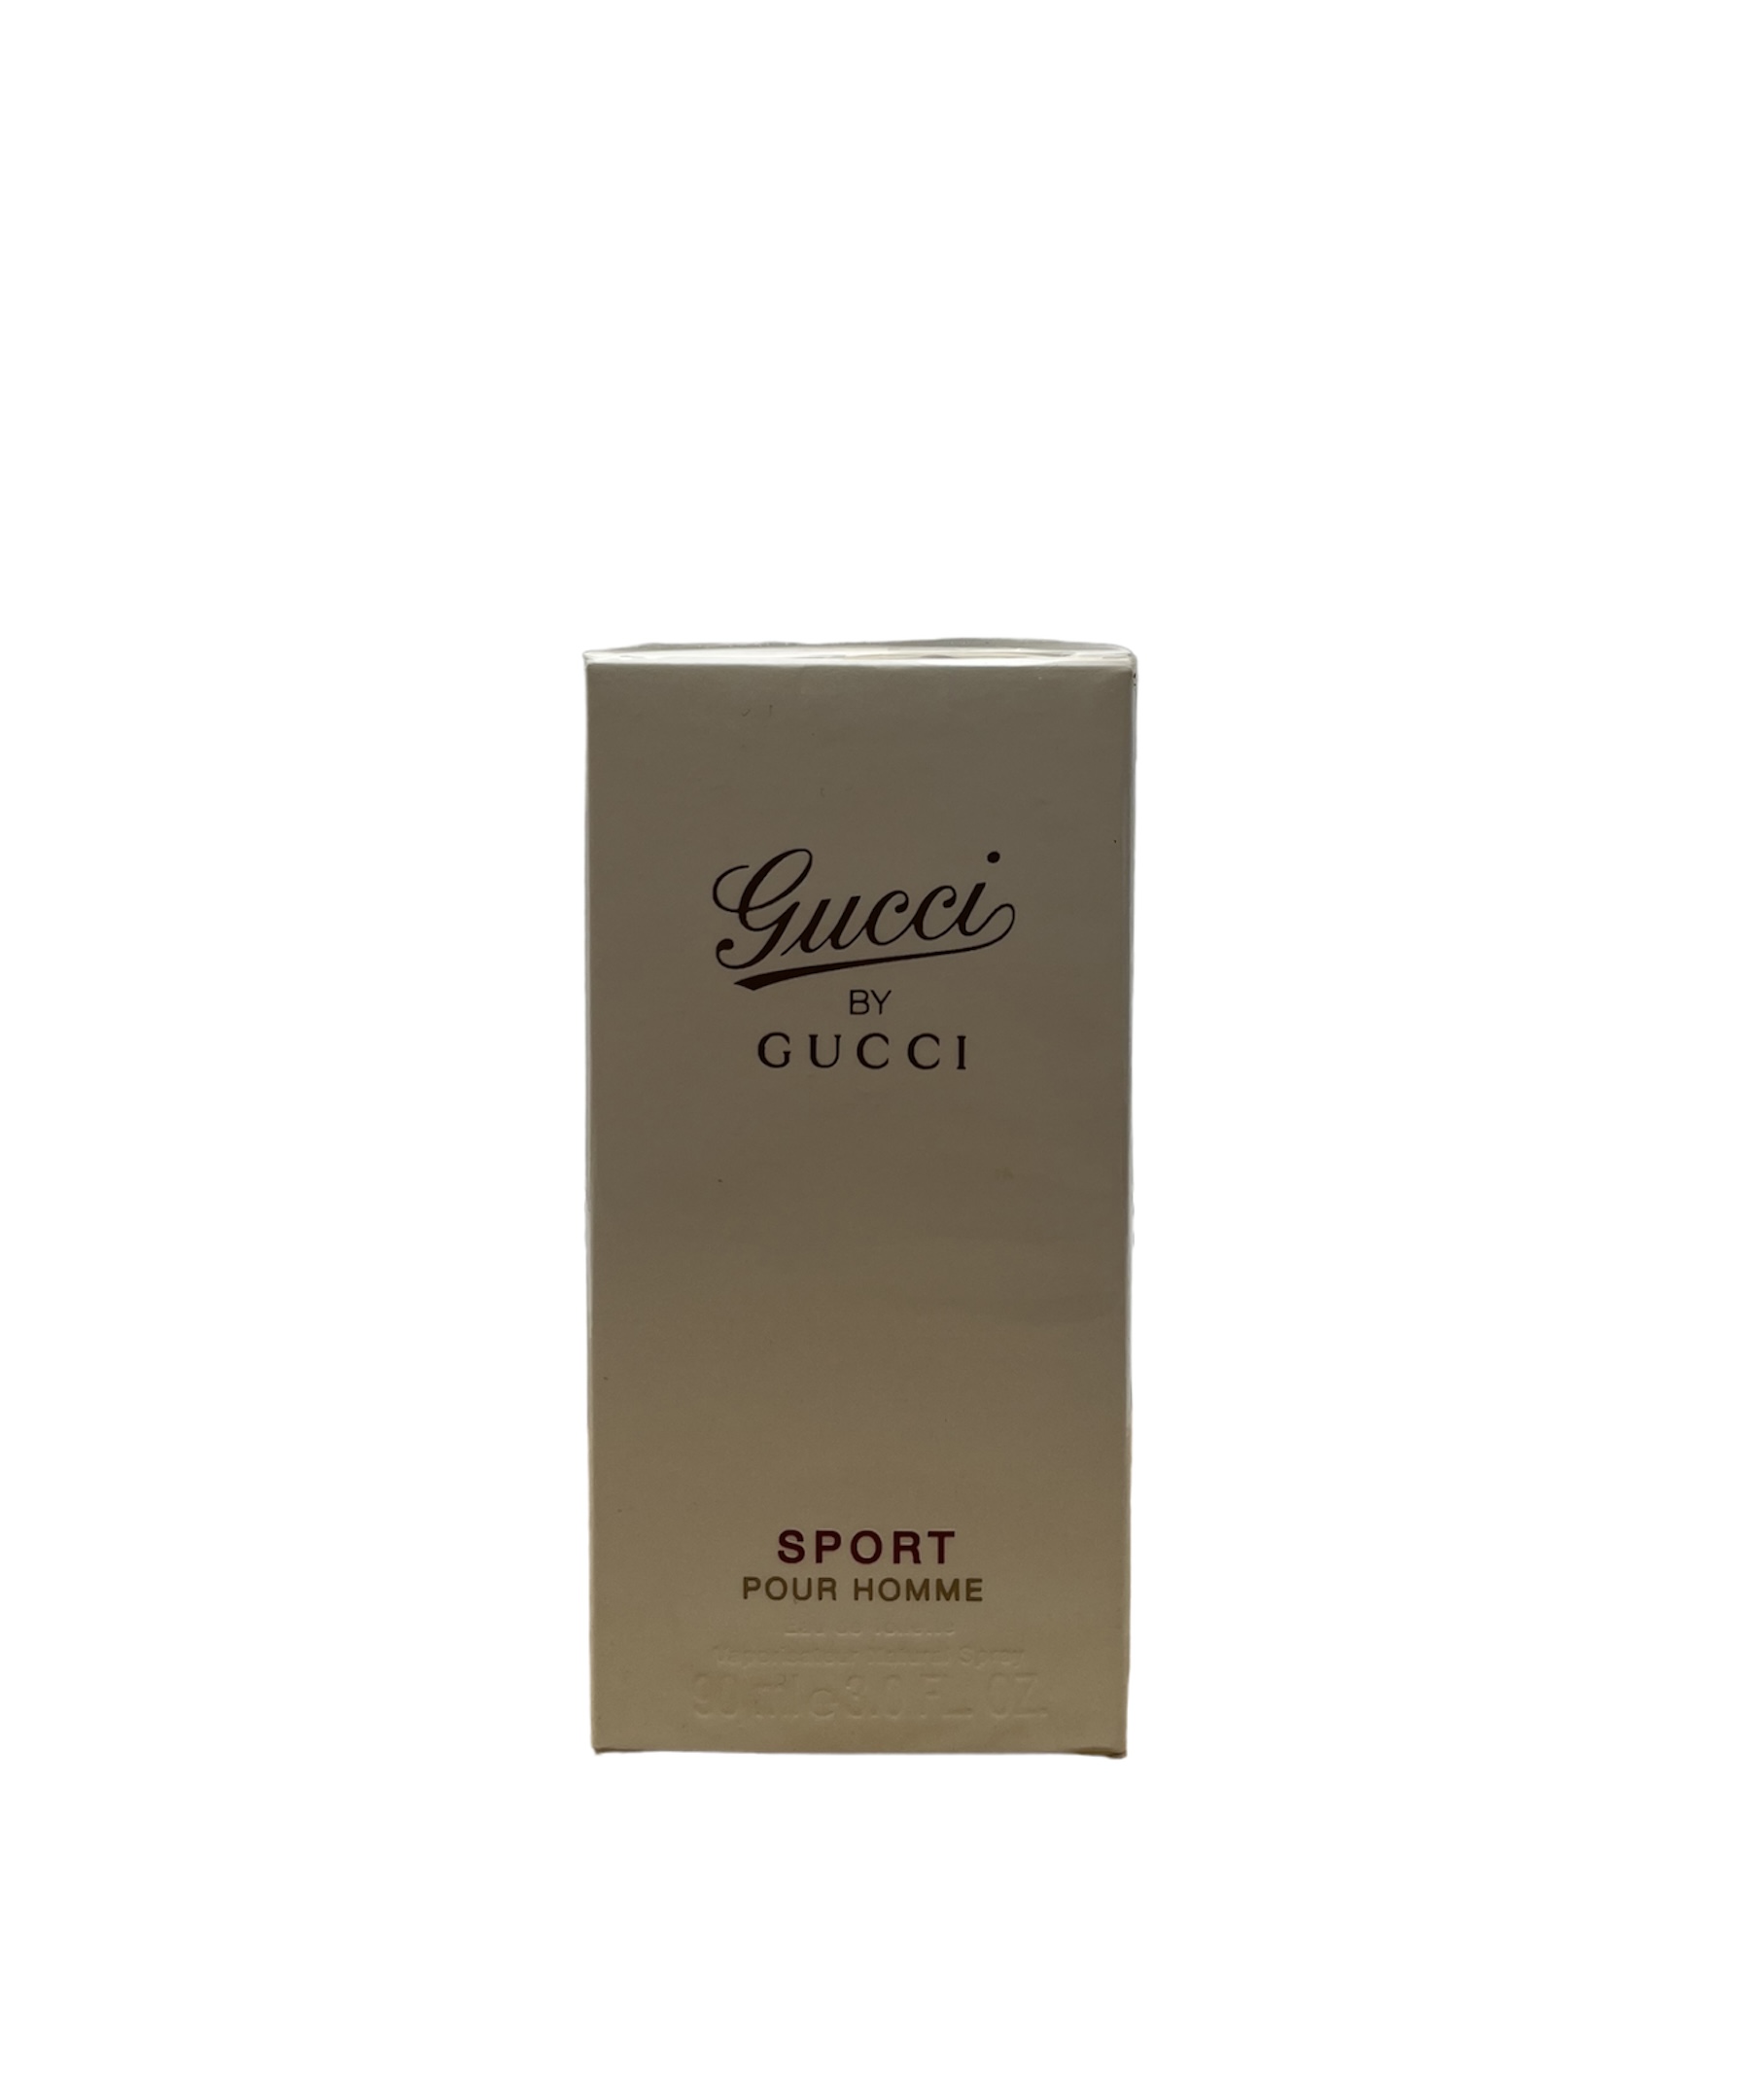  Gucci by Gucci Sport pour Homme Eau de Toilette 90ml 